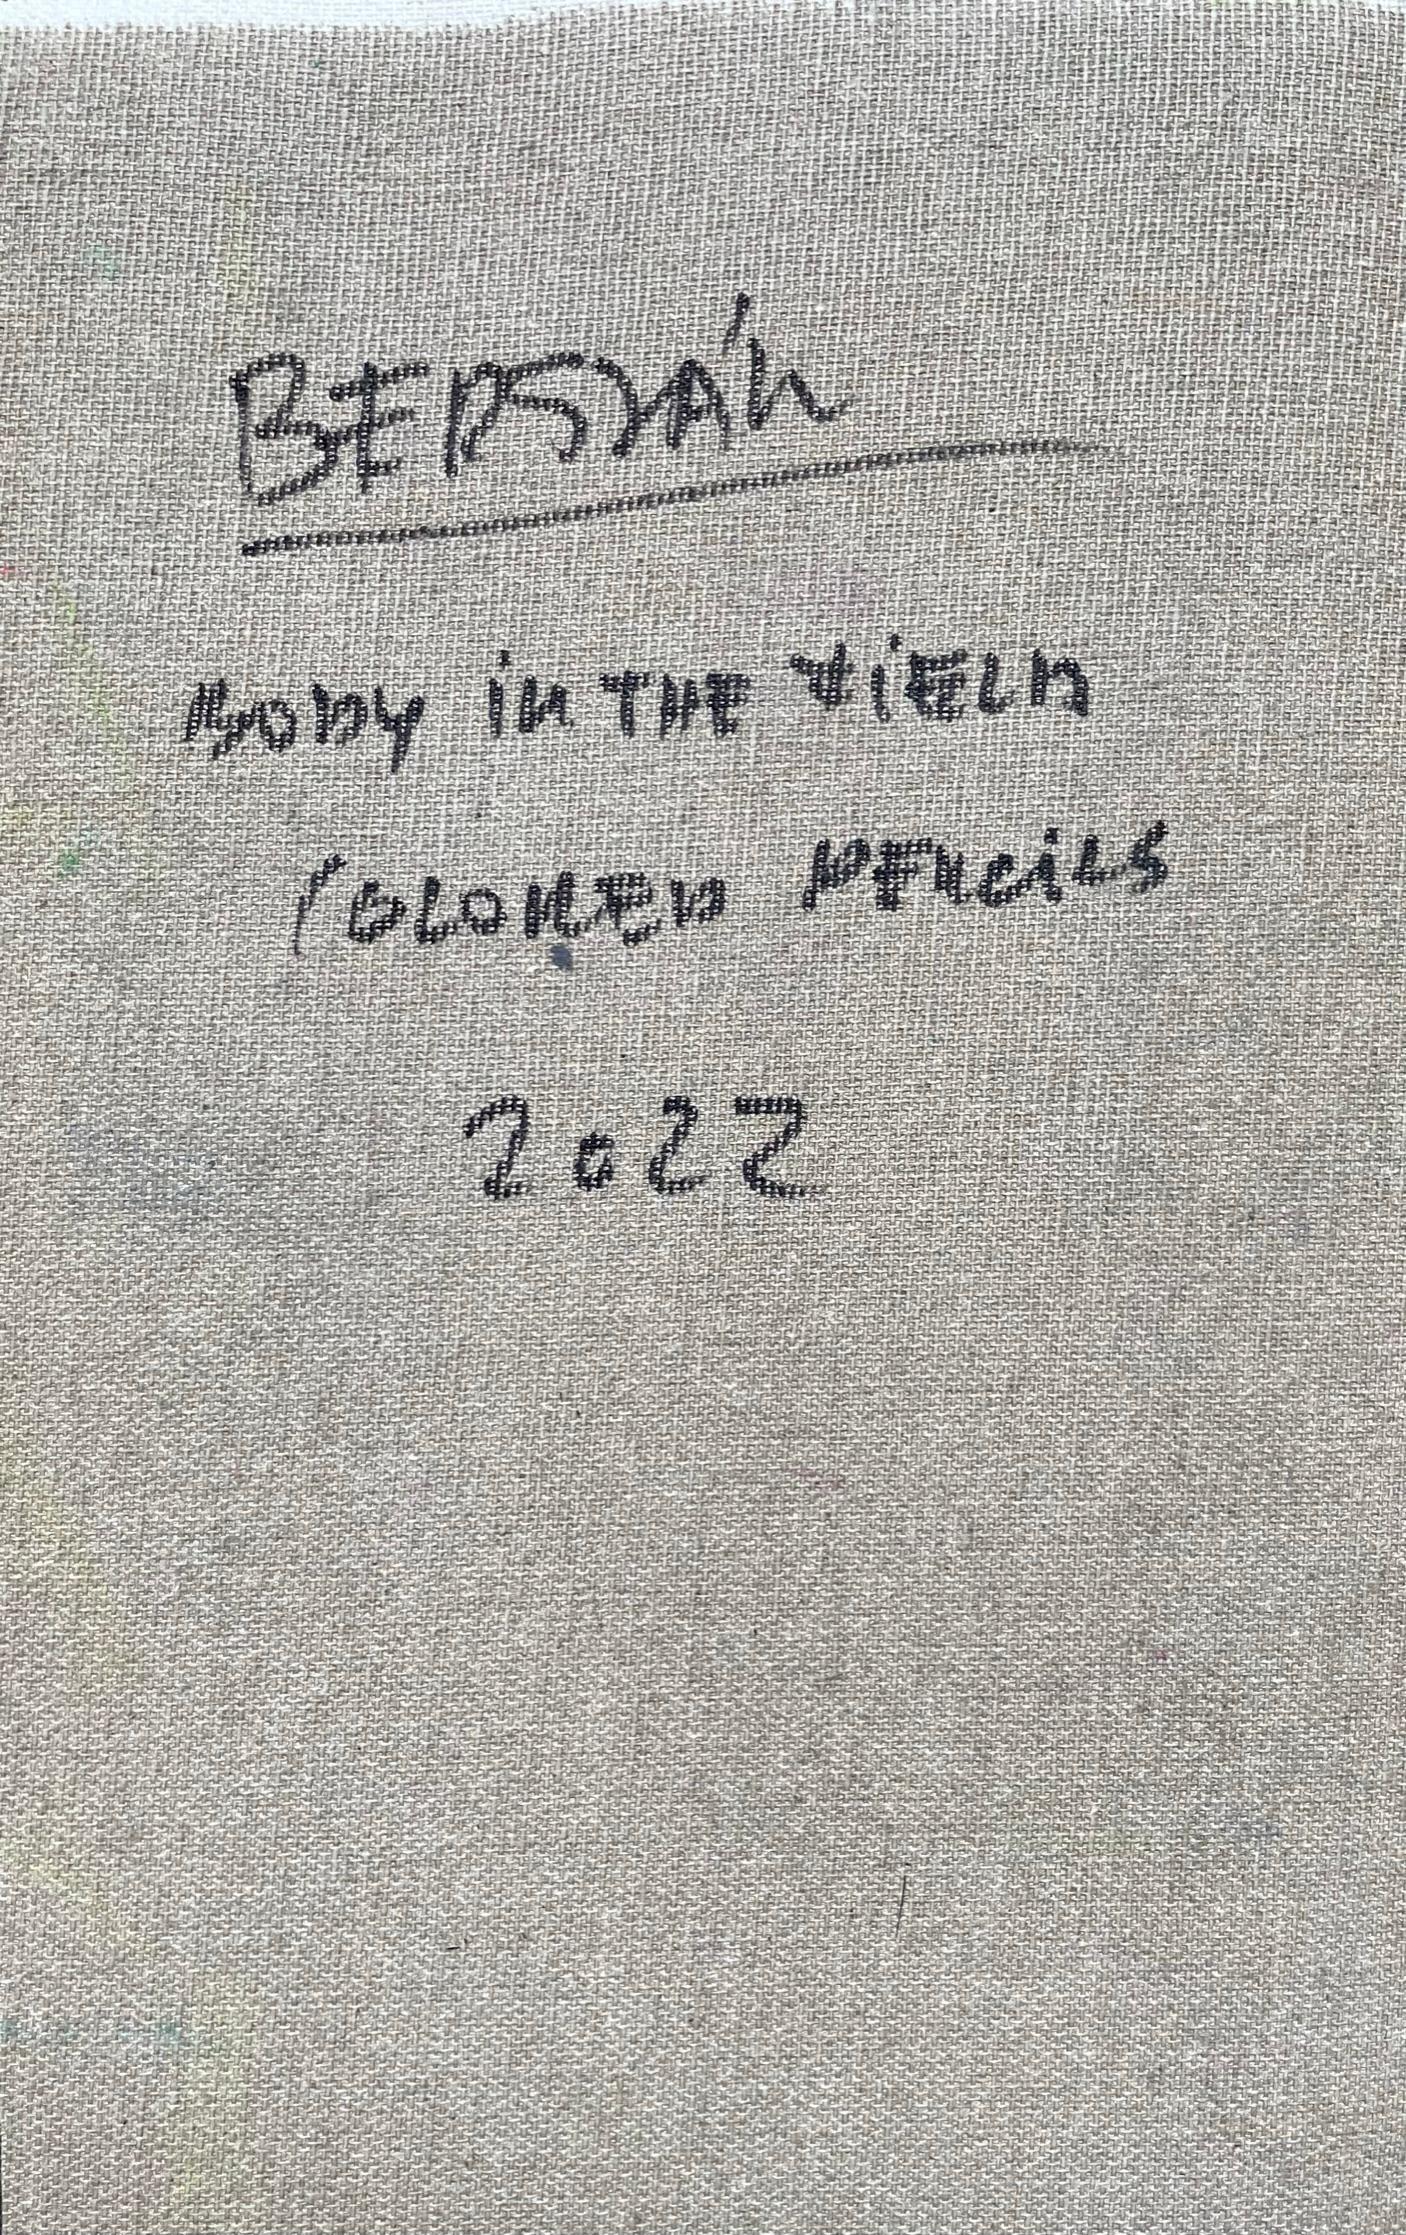 Corps sur le terrain #5, 2022
crayons de couleur sur toile

25 H x 16 L cm

Signé au dos

Zsolt Berszán incarne dans ses œuvres la dissolution du corps humain à travers le prisme du fragment, du corps en morceaux et de la carcasse squelettique.